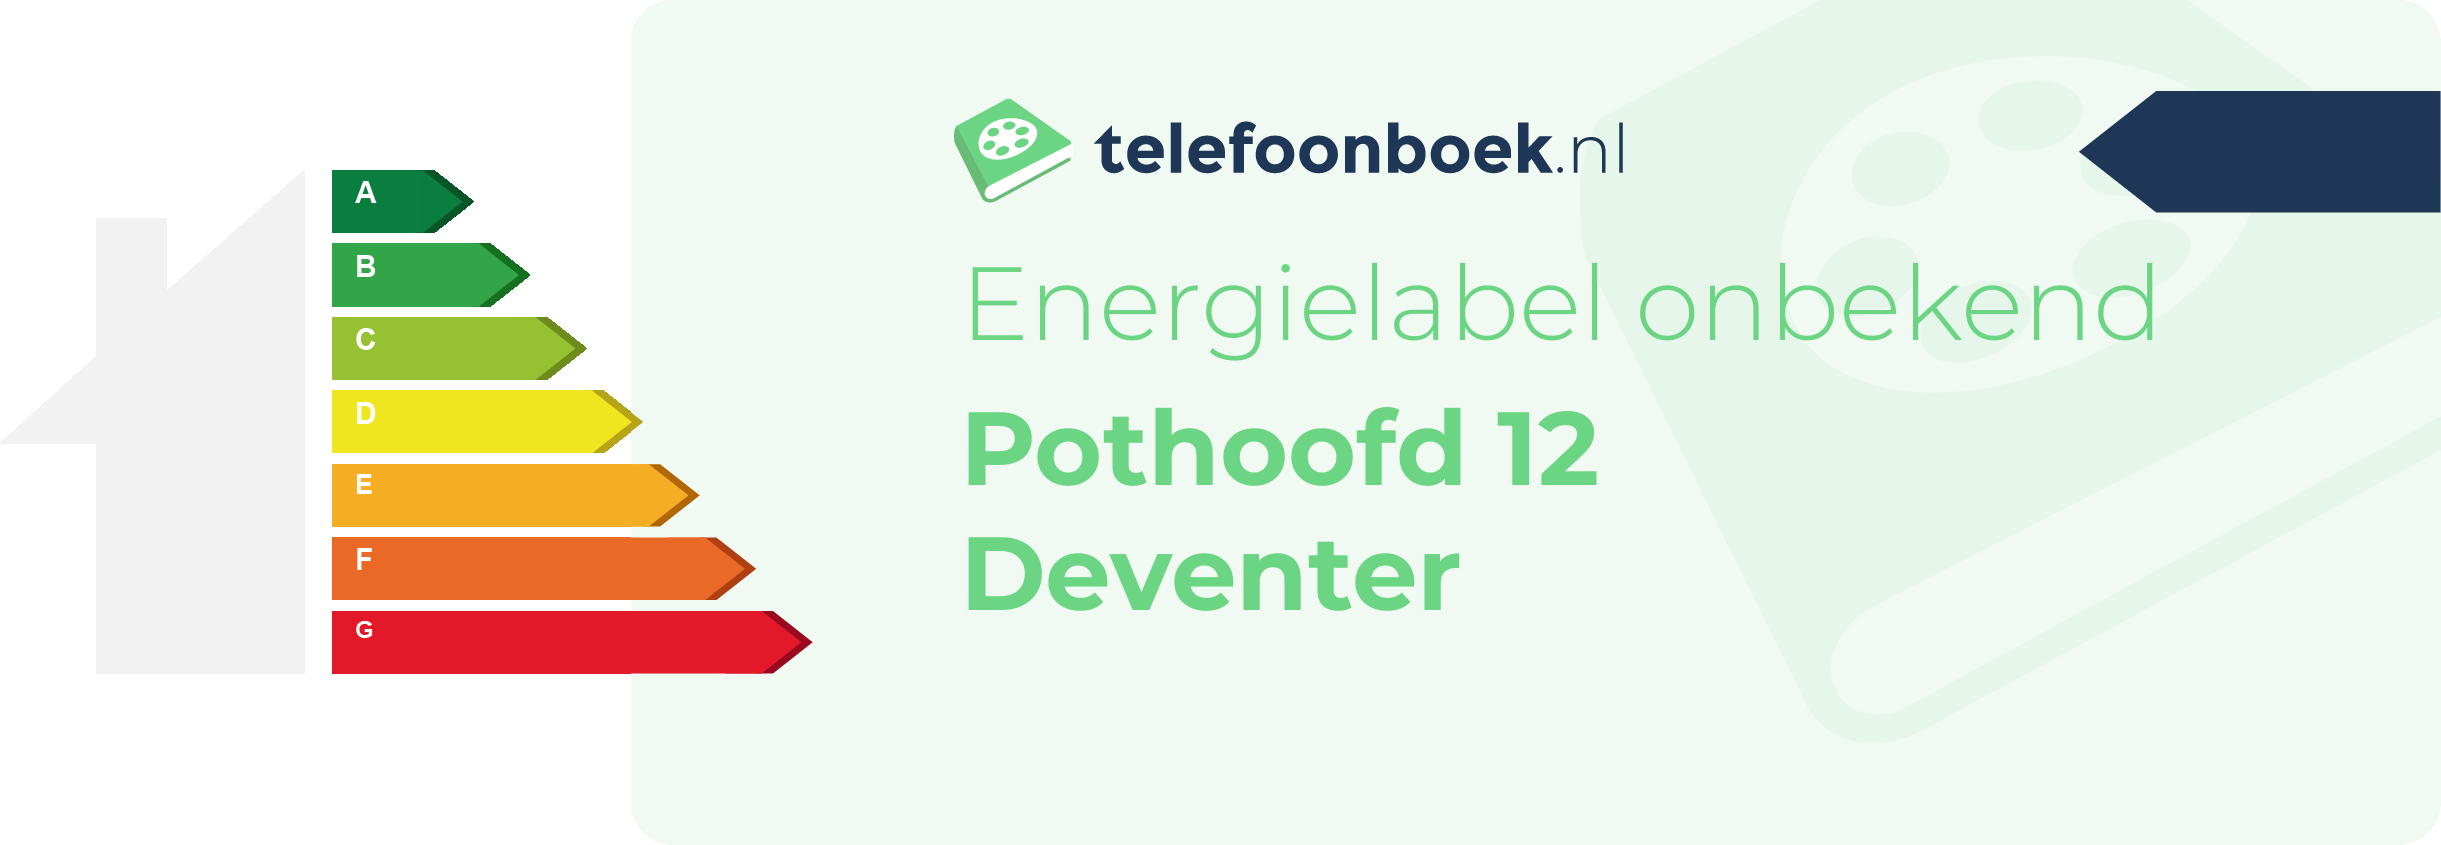 Energielabel Pothoofd 12 Deventer